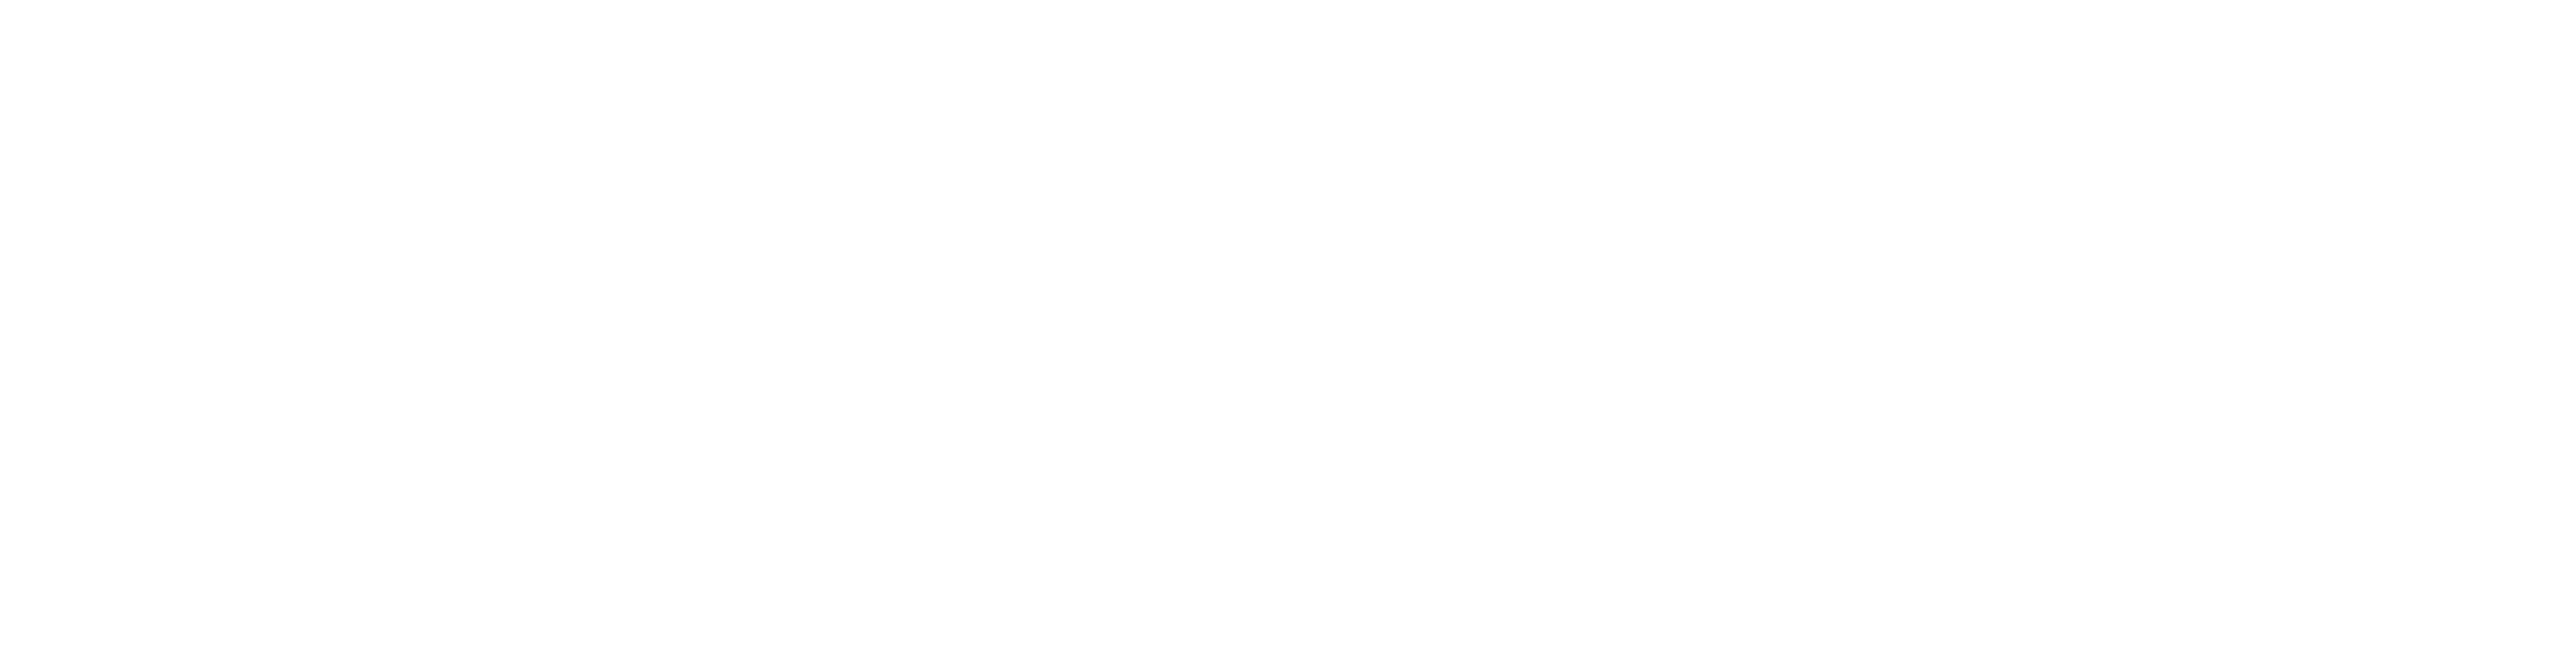 Building Better Practice